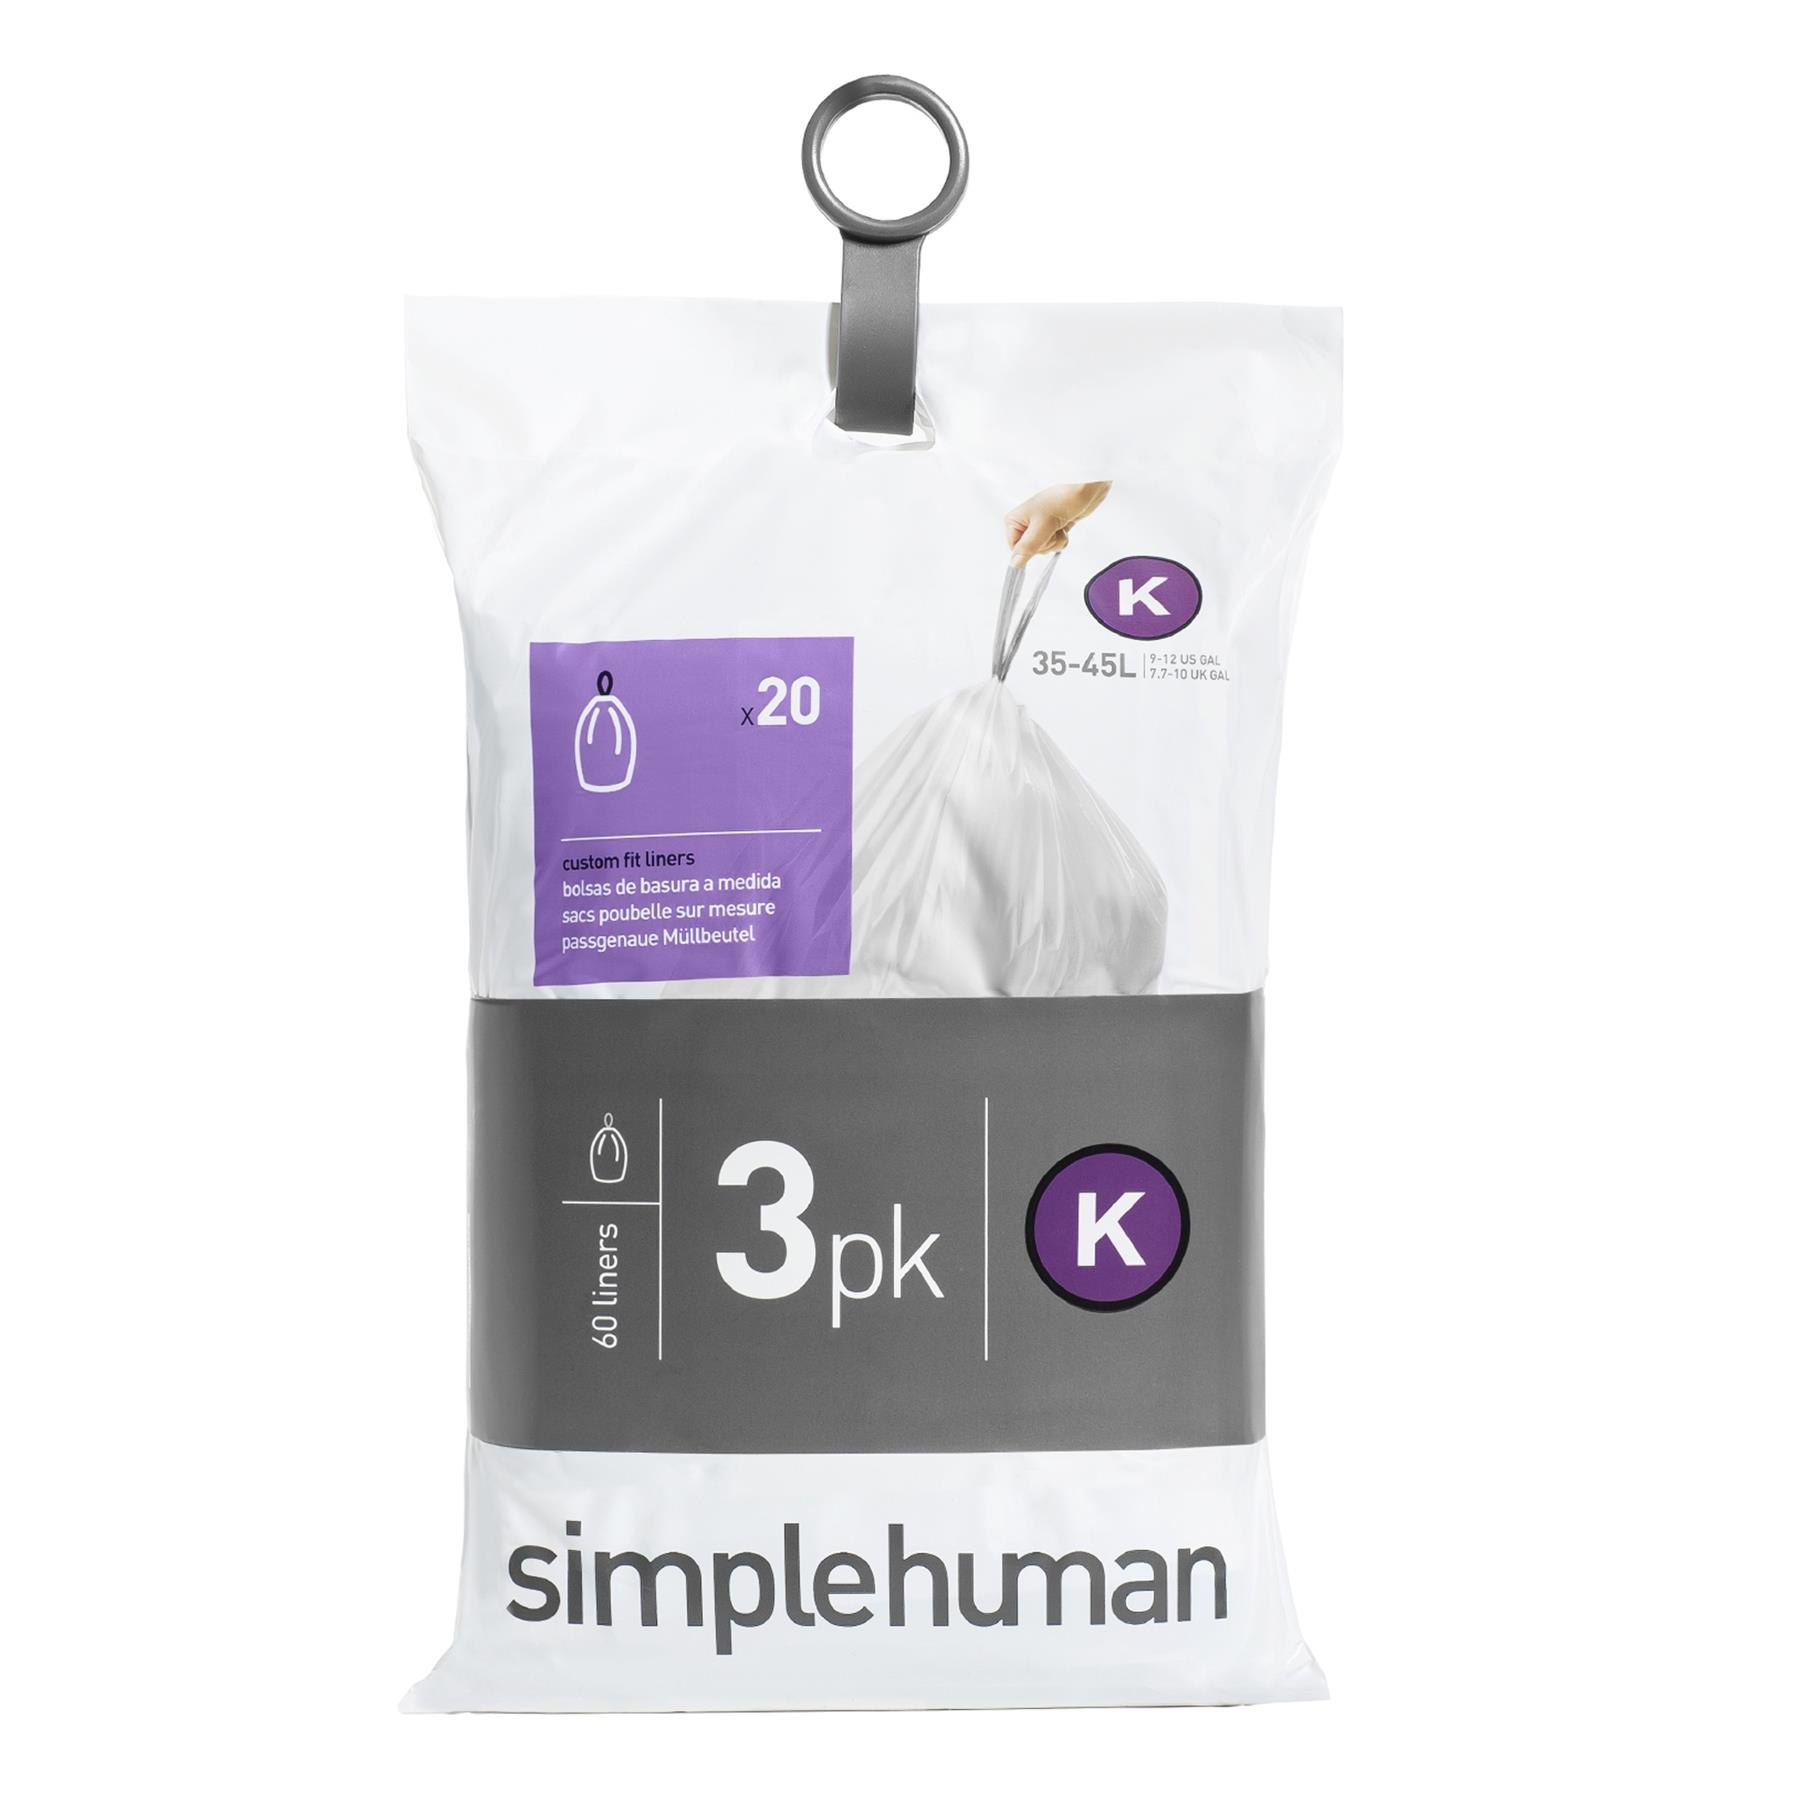 FonQ Simplehuman Code K Pocket Liners Afvalzakken 35-45 Liter - 60 zakken aanbieding